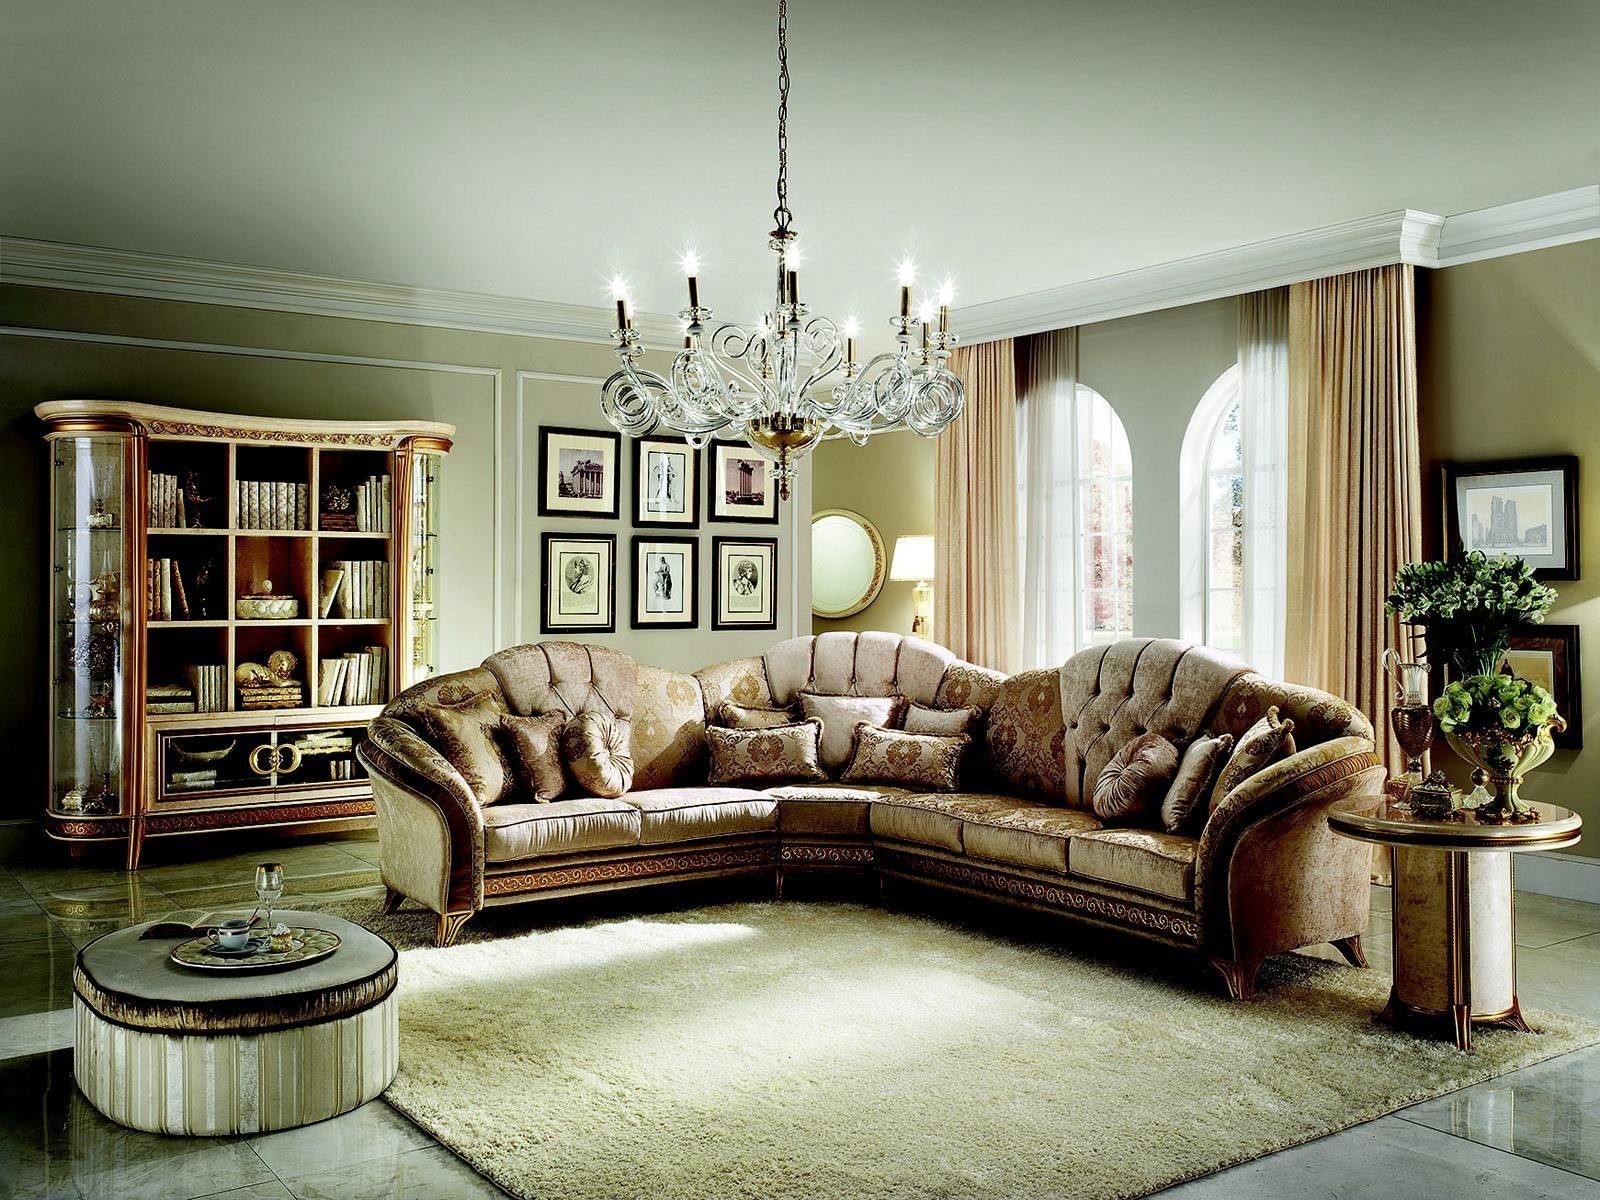 JVmoebel Ecksofa Luxus Ecksofa Europe Made Klassische Couch Neu, Polstermöbel in Wohnzimmer